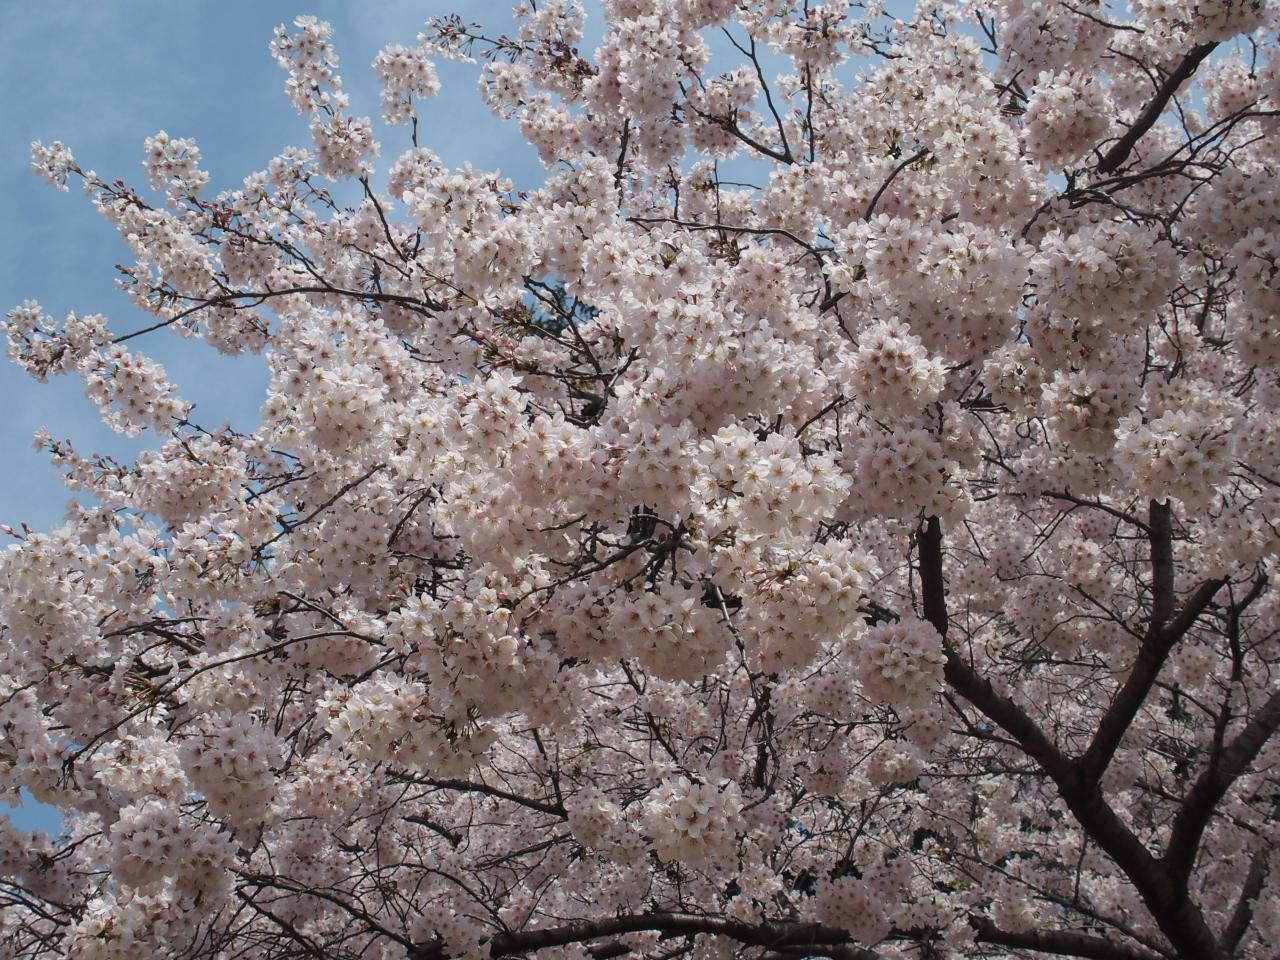 Les cerisiers blancs ont une floraison très dense